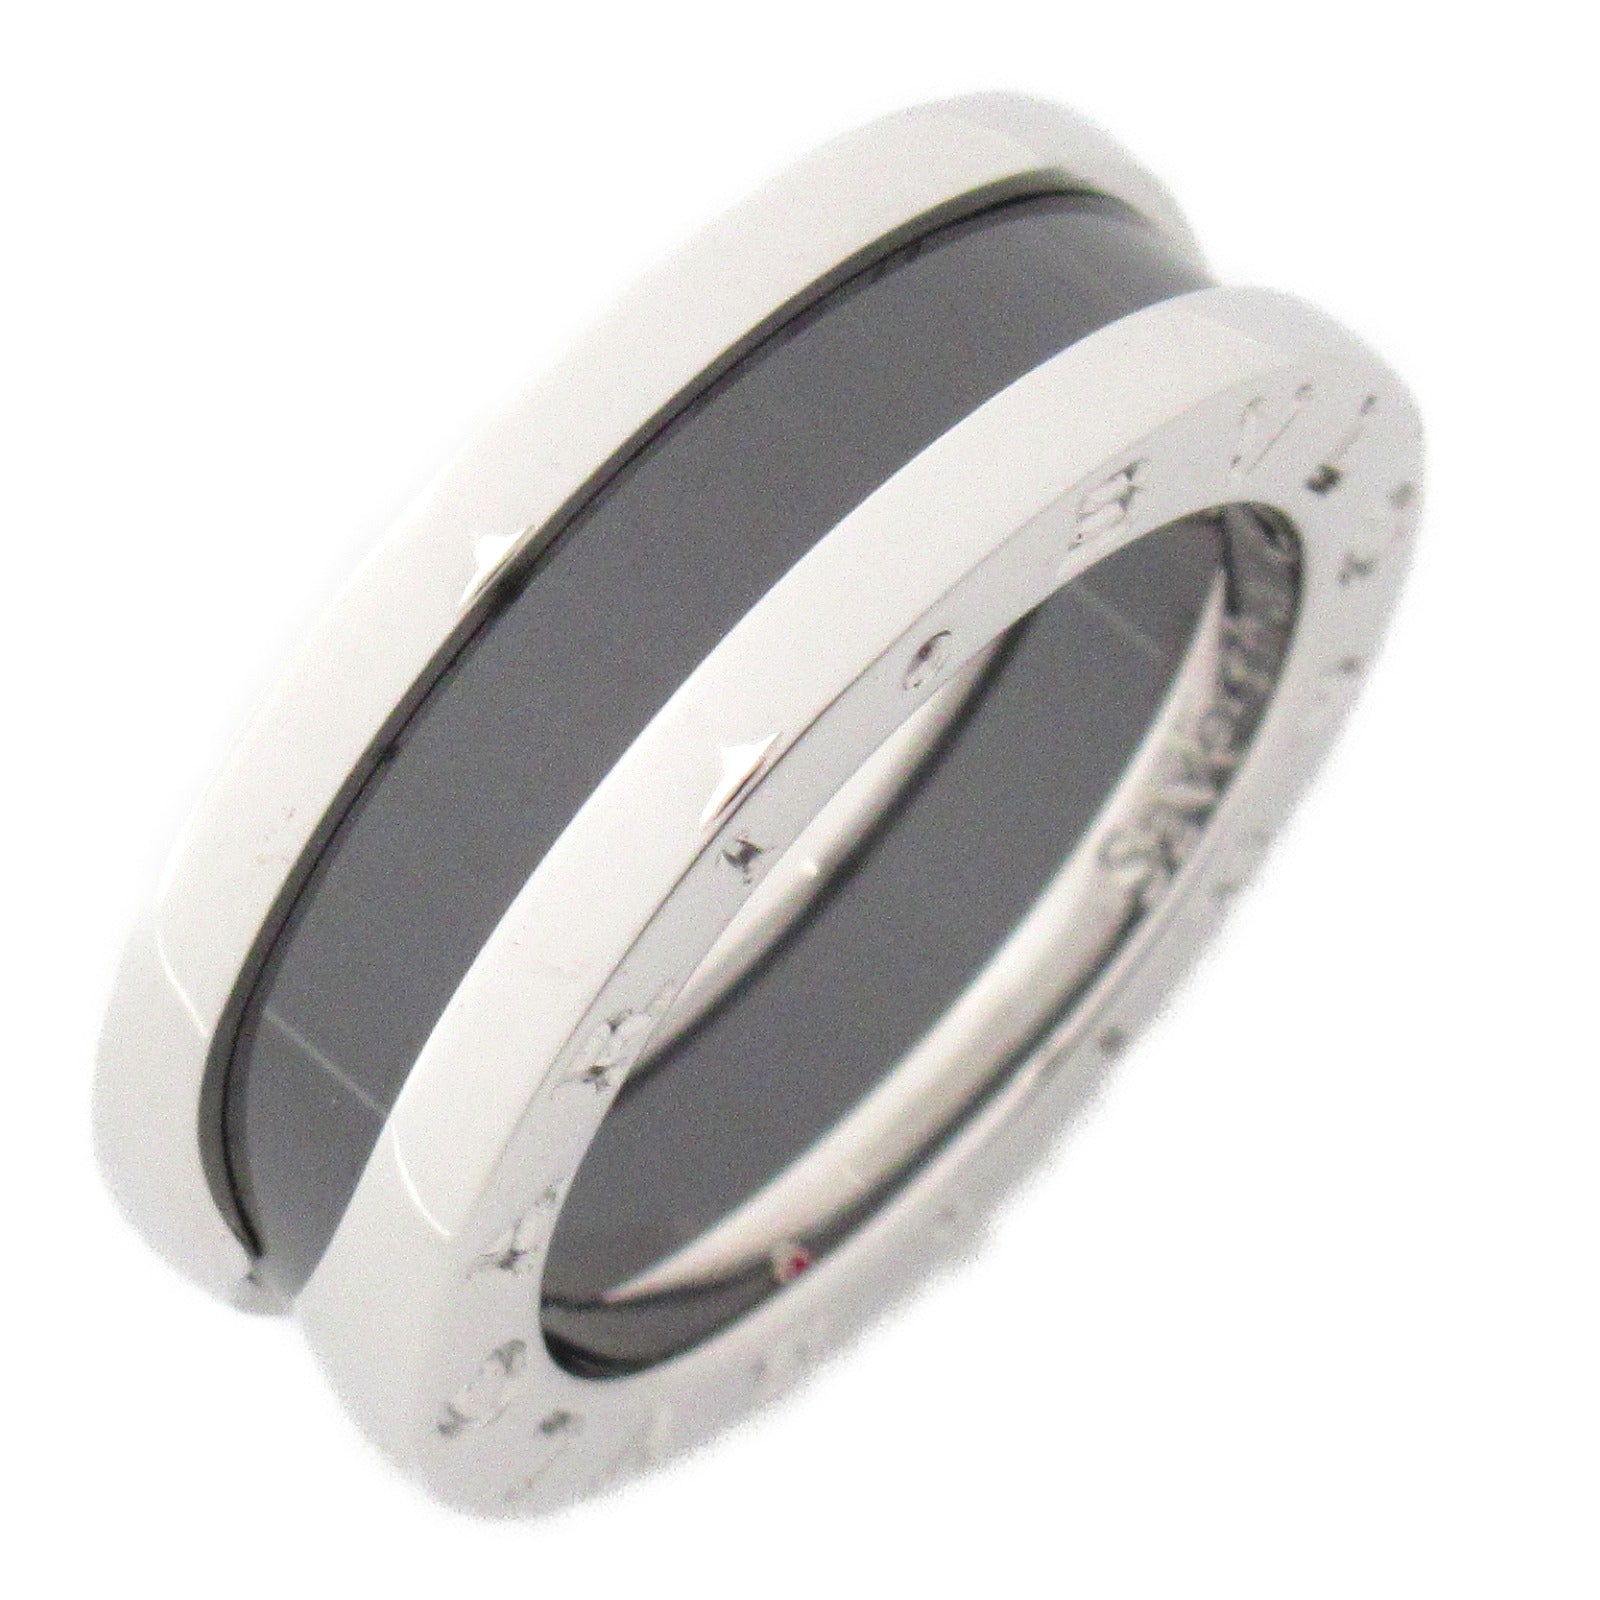 Bulgari BVLGARI B-zero1 Beezero One Save The Kids Ring Ring Ring Jewelry Silver 925   Silver